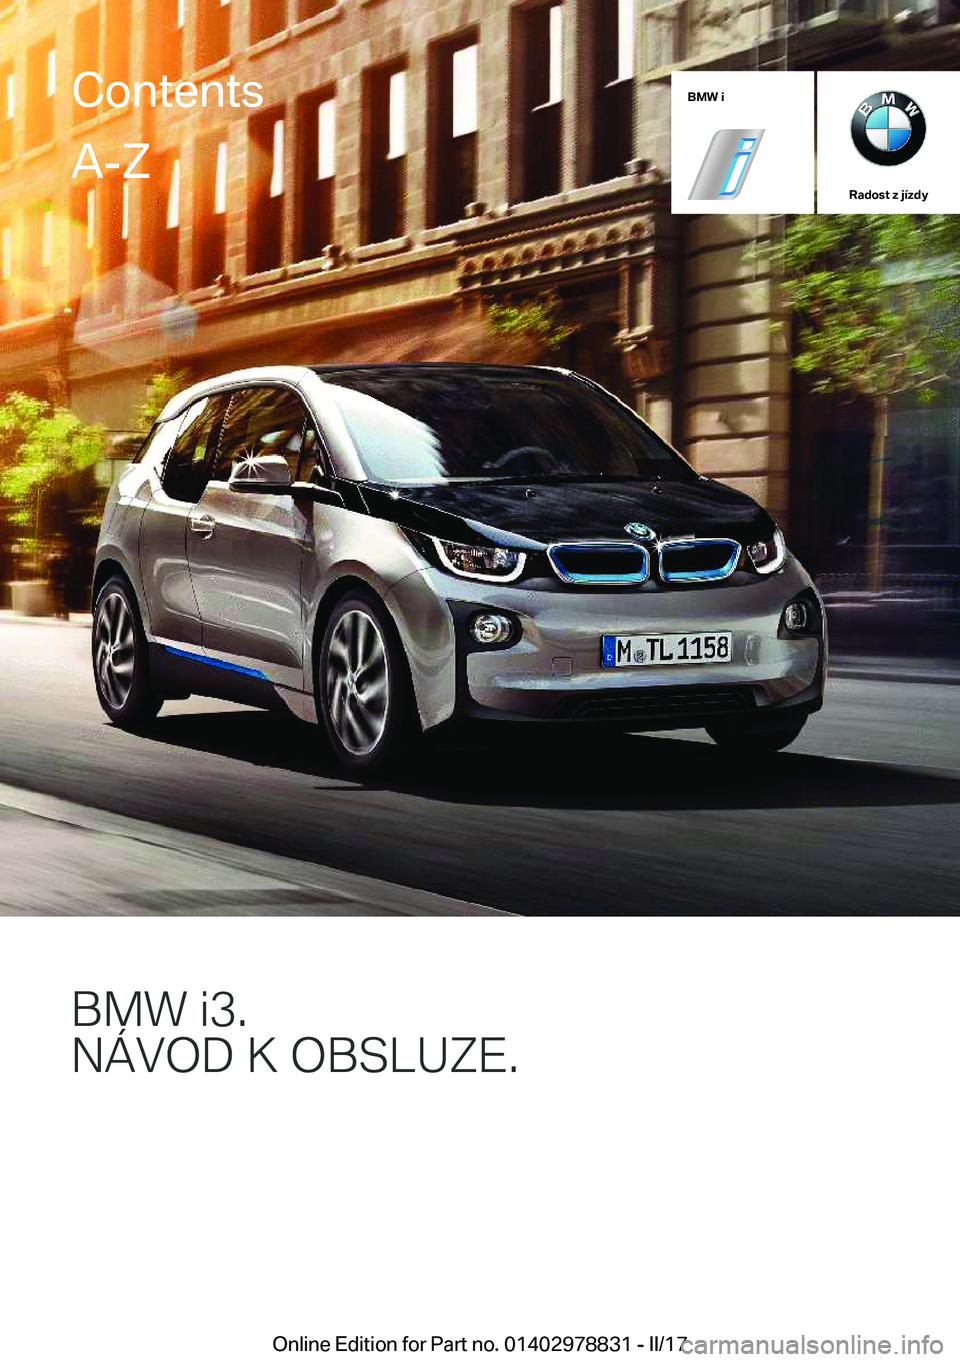 BMW I3 2017  Návod na použití (in Czech) �B�M�W��i
�R�a�d�o�s�t��z��j�